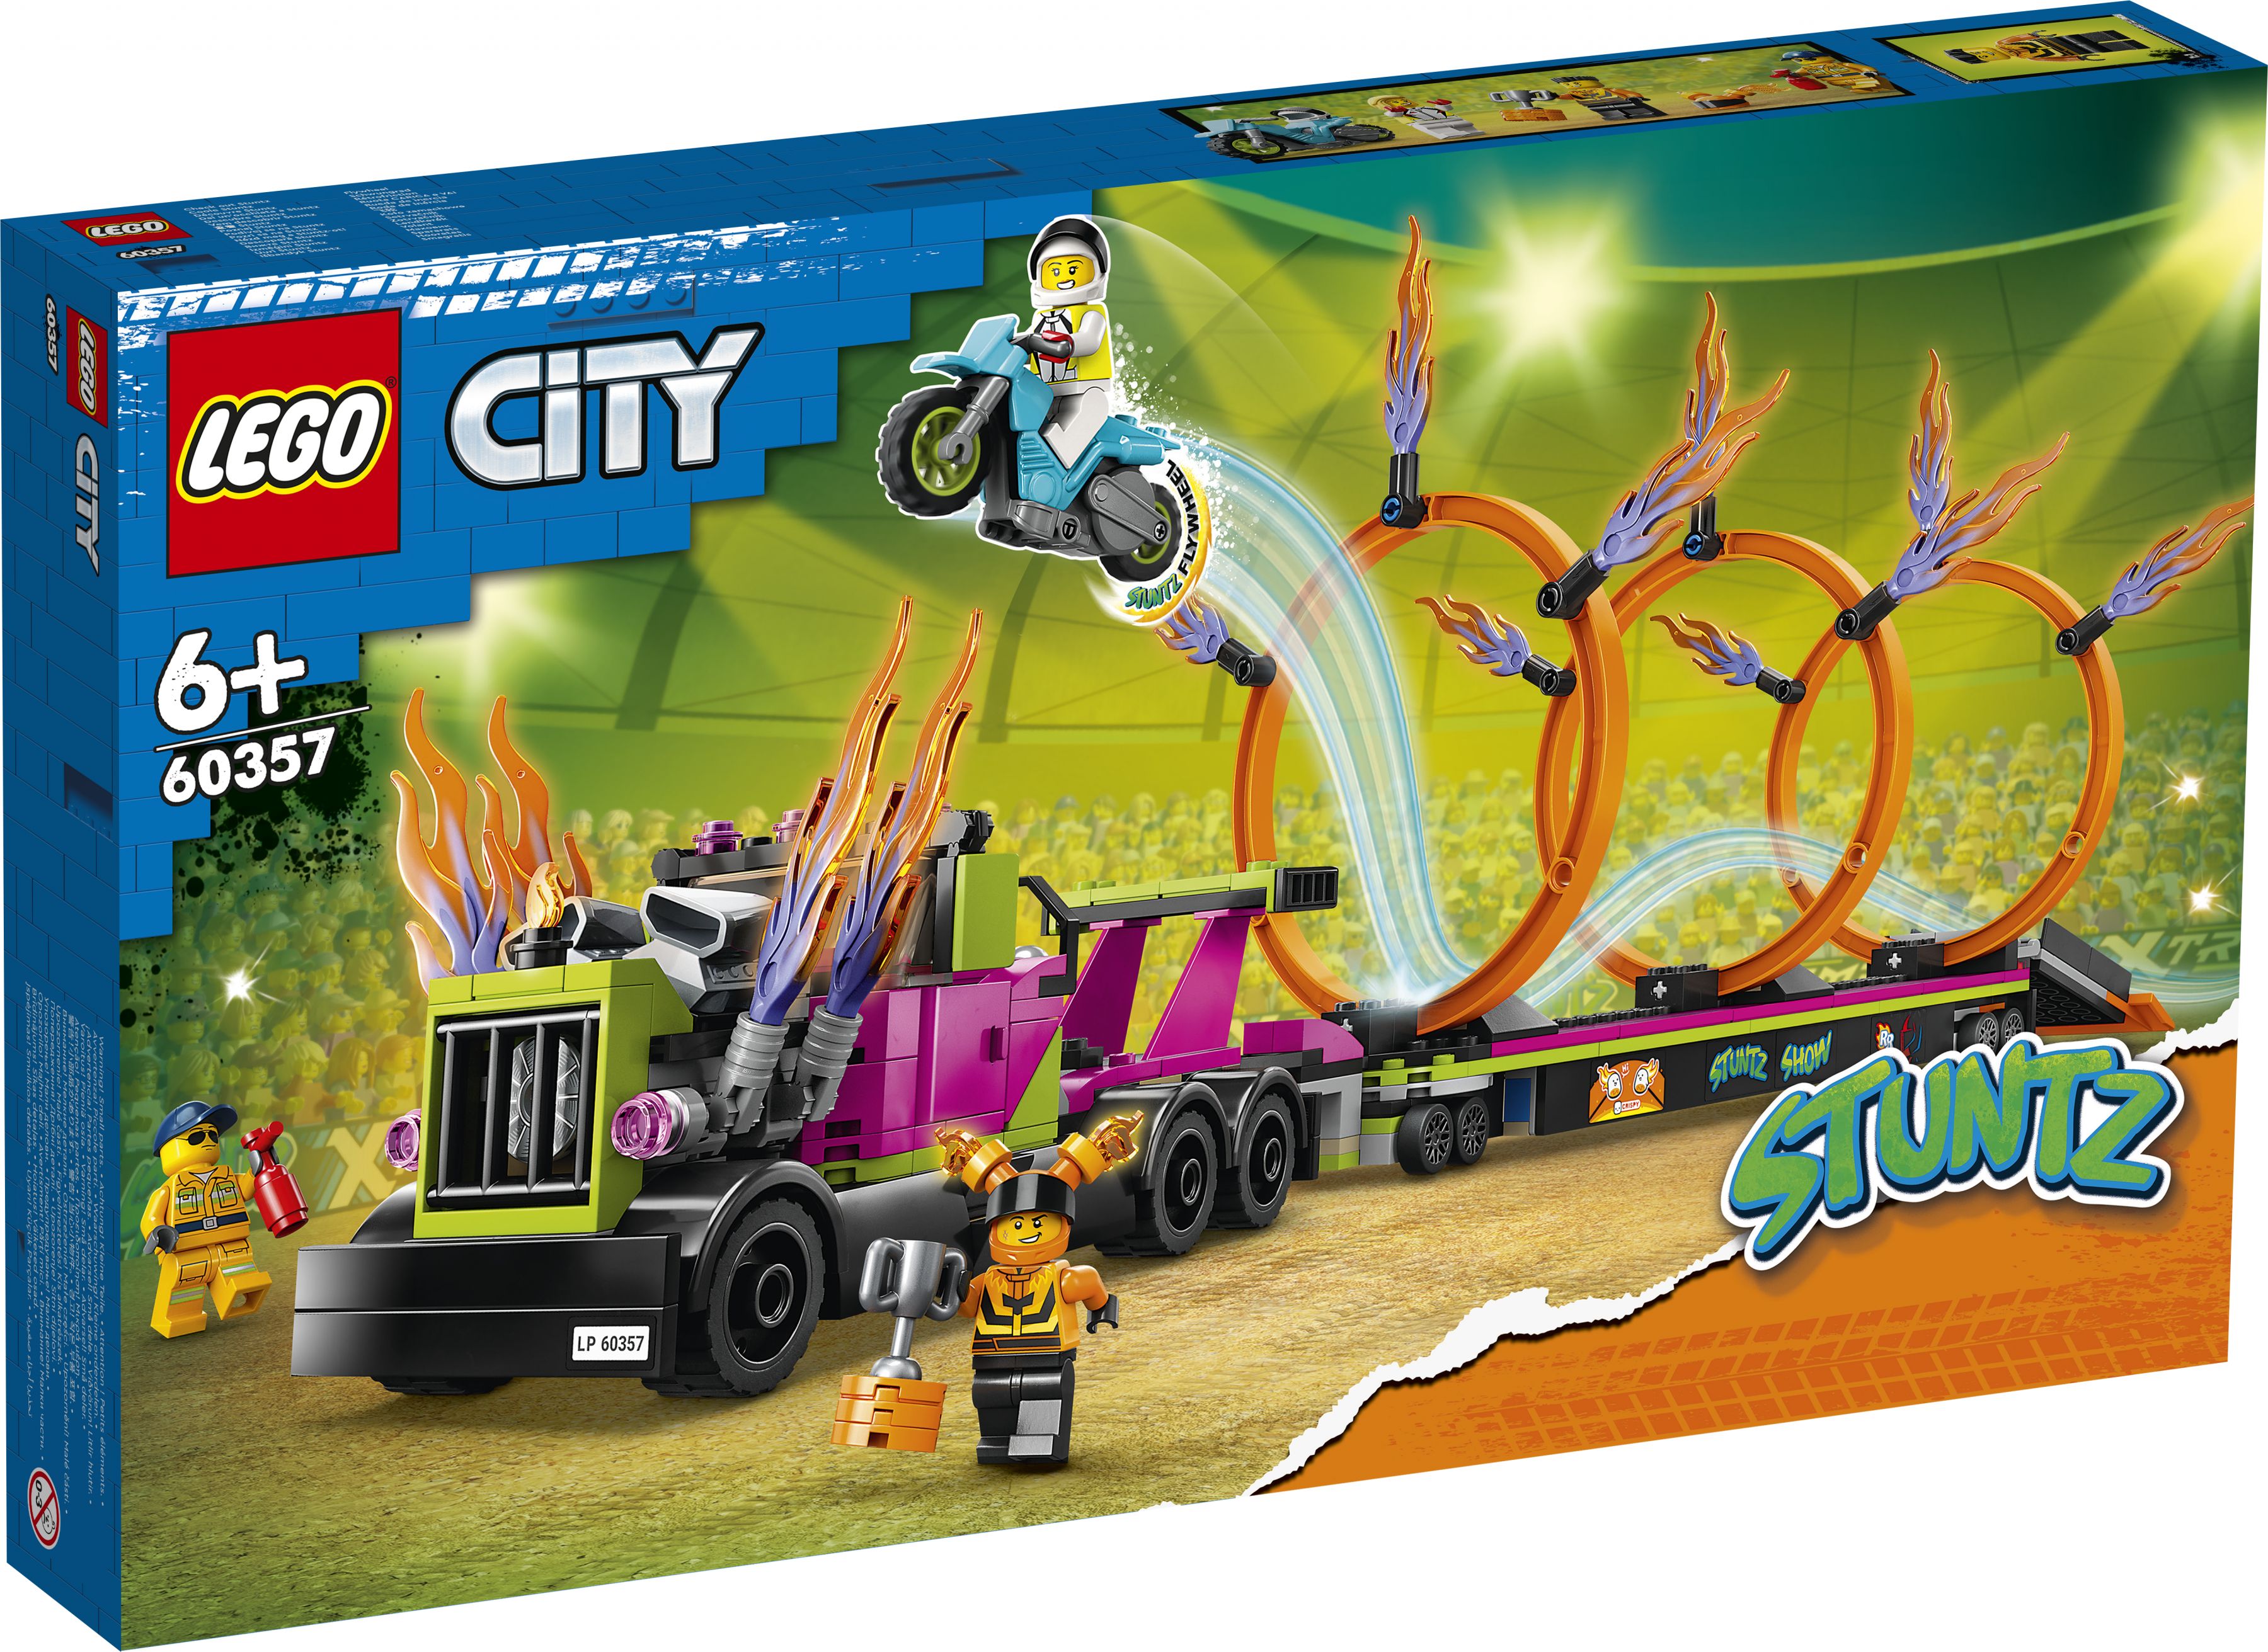 LEGO City 60357 Stunttruck & Feuerreifen-Challenge LEGO_60357_Box1_v29.jpg